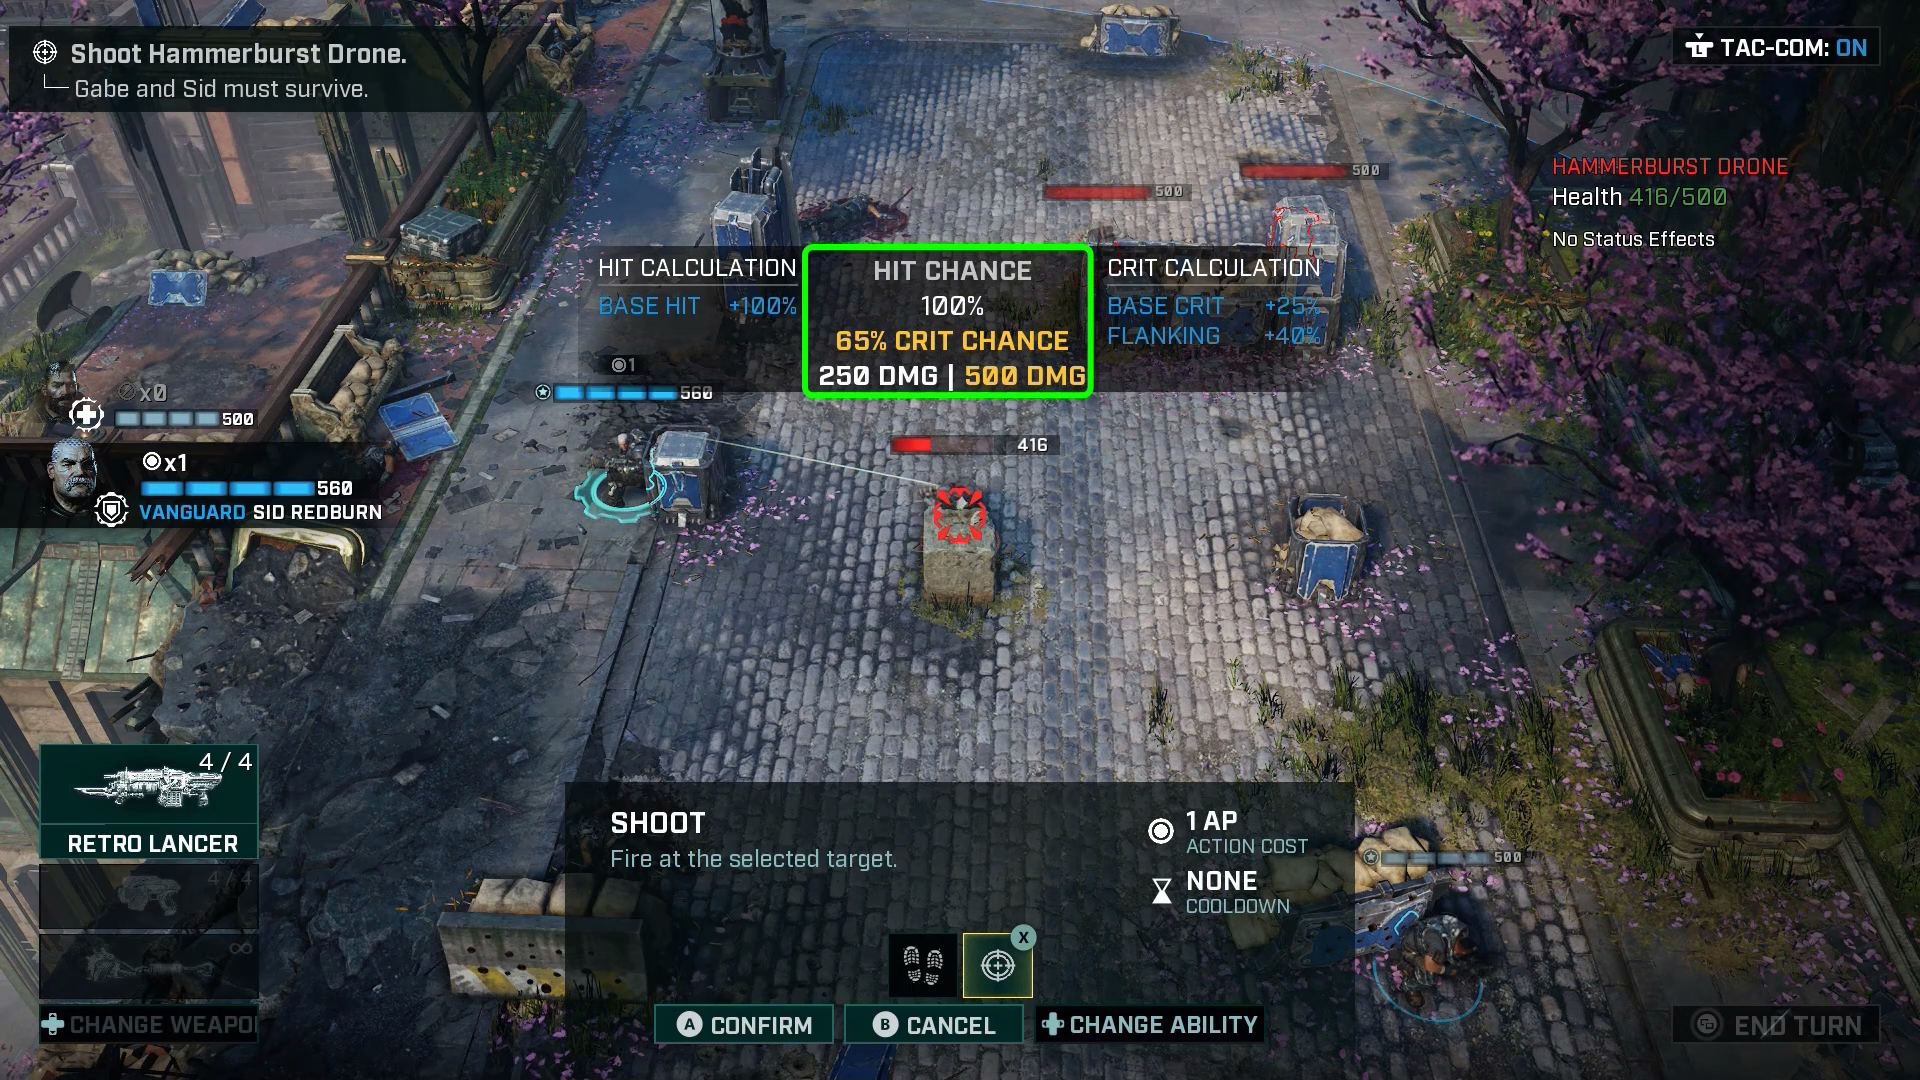 A screenshot of Gears Tactics gameplay user interface.